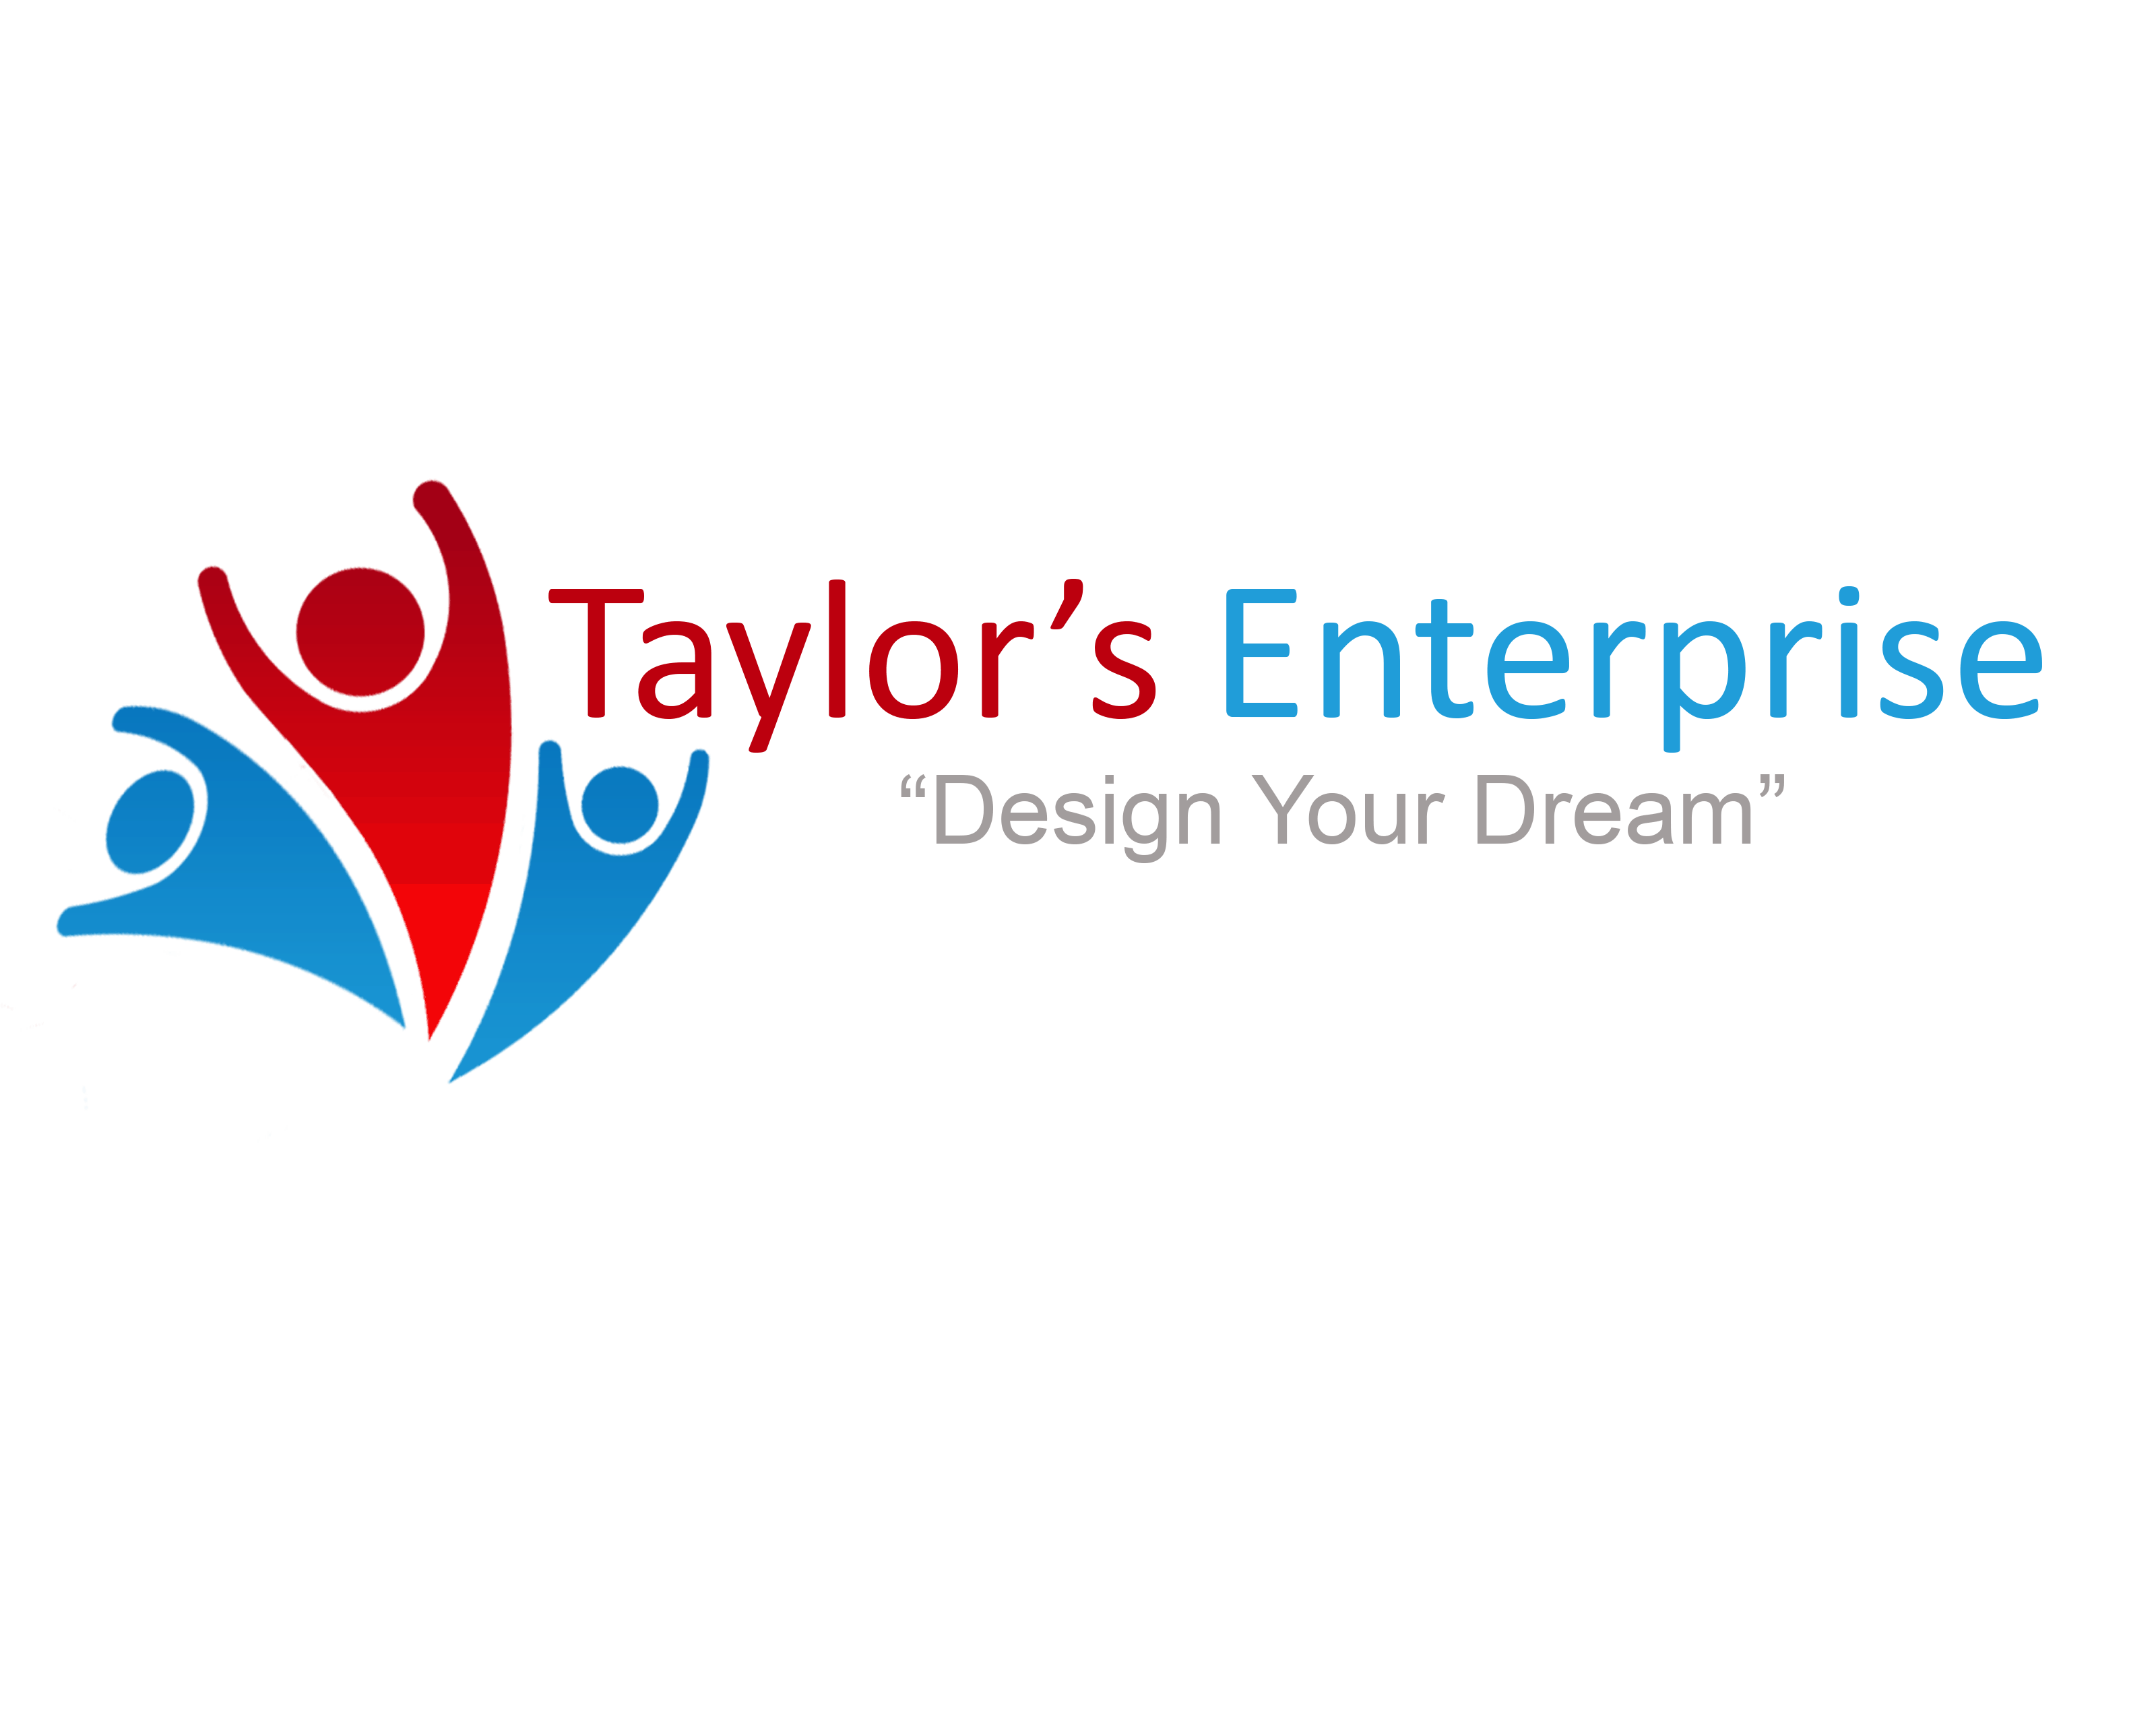 Taylor’s Enterprise